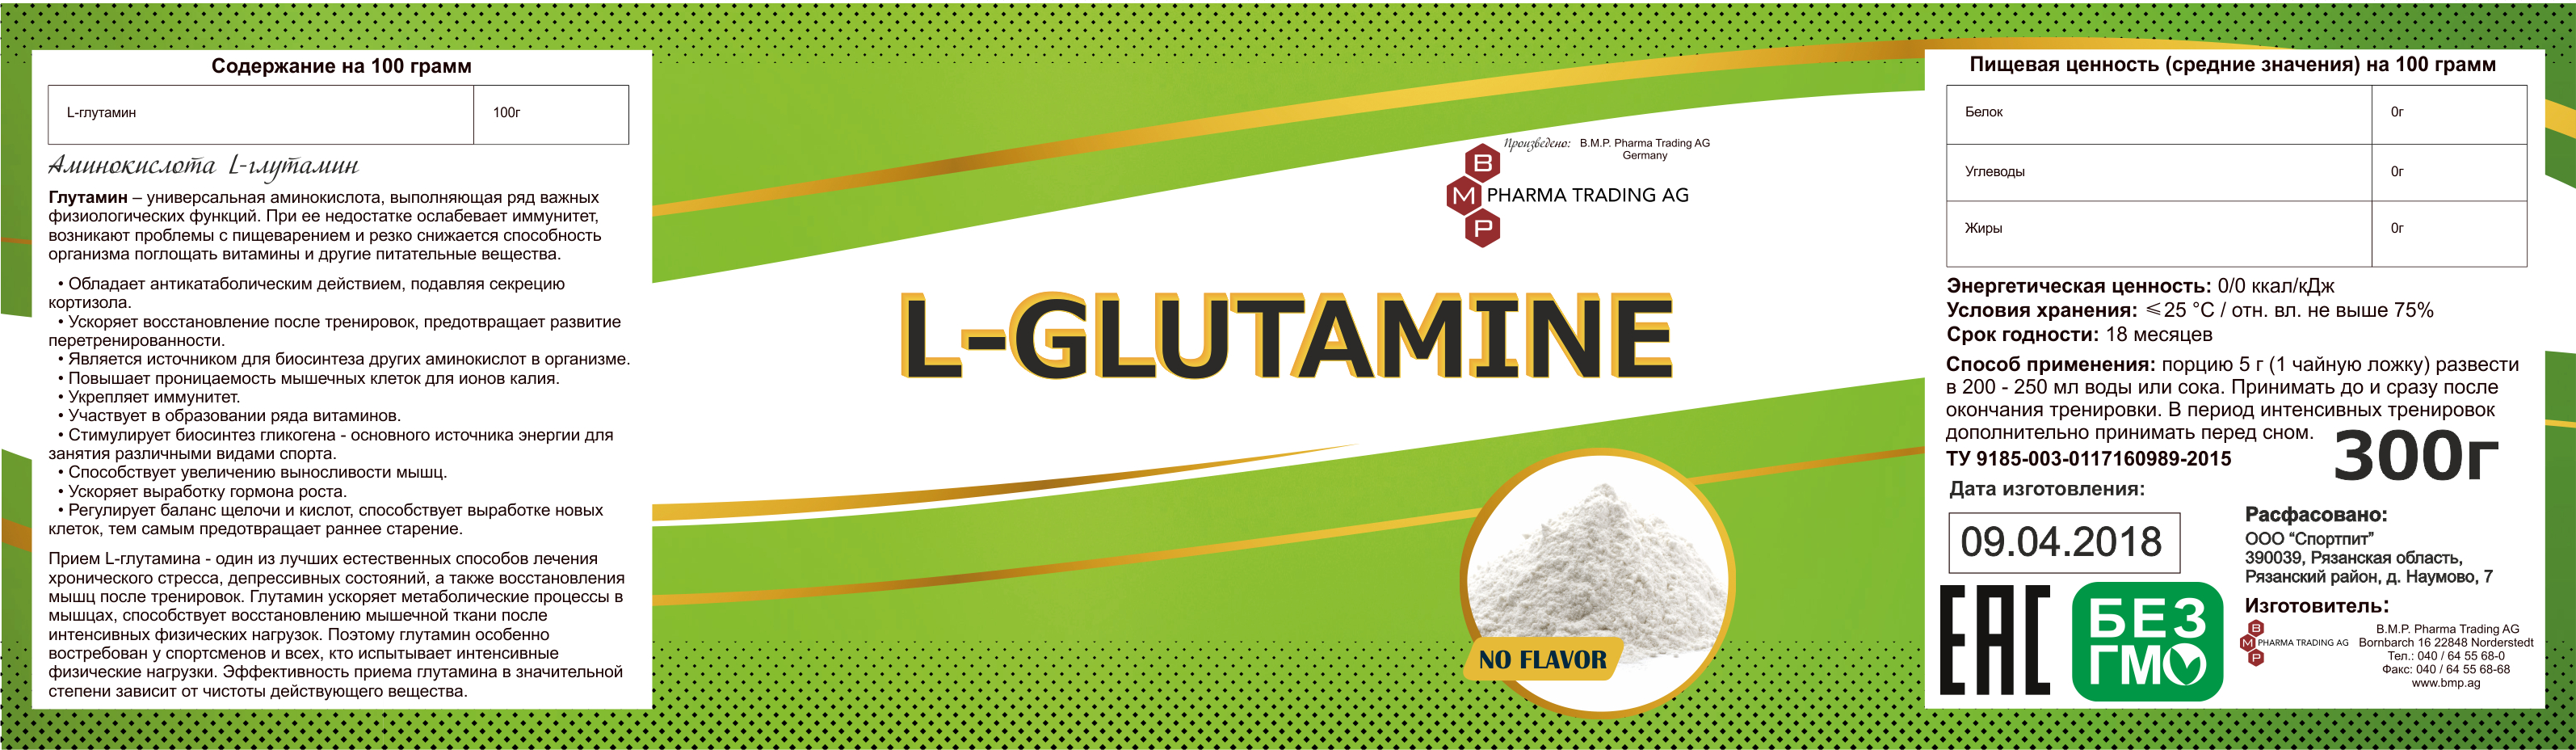 SN_glutamin_flavour